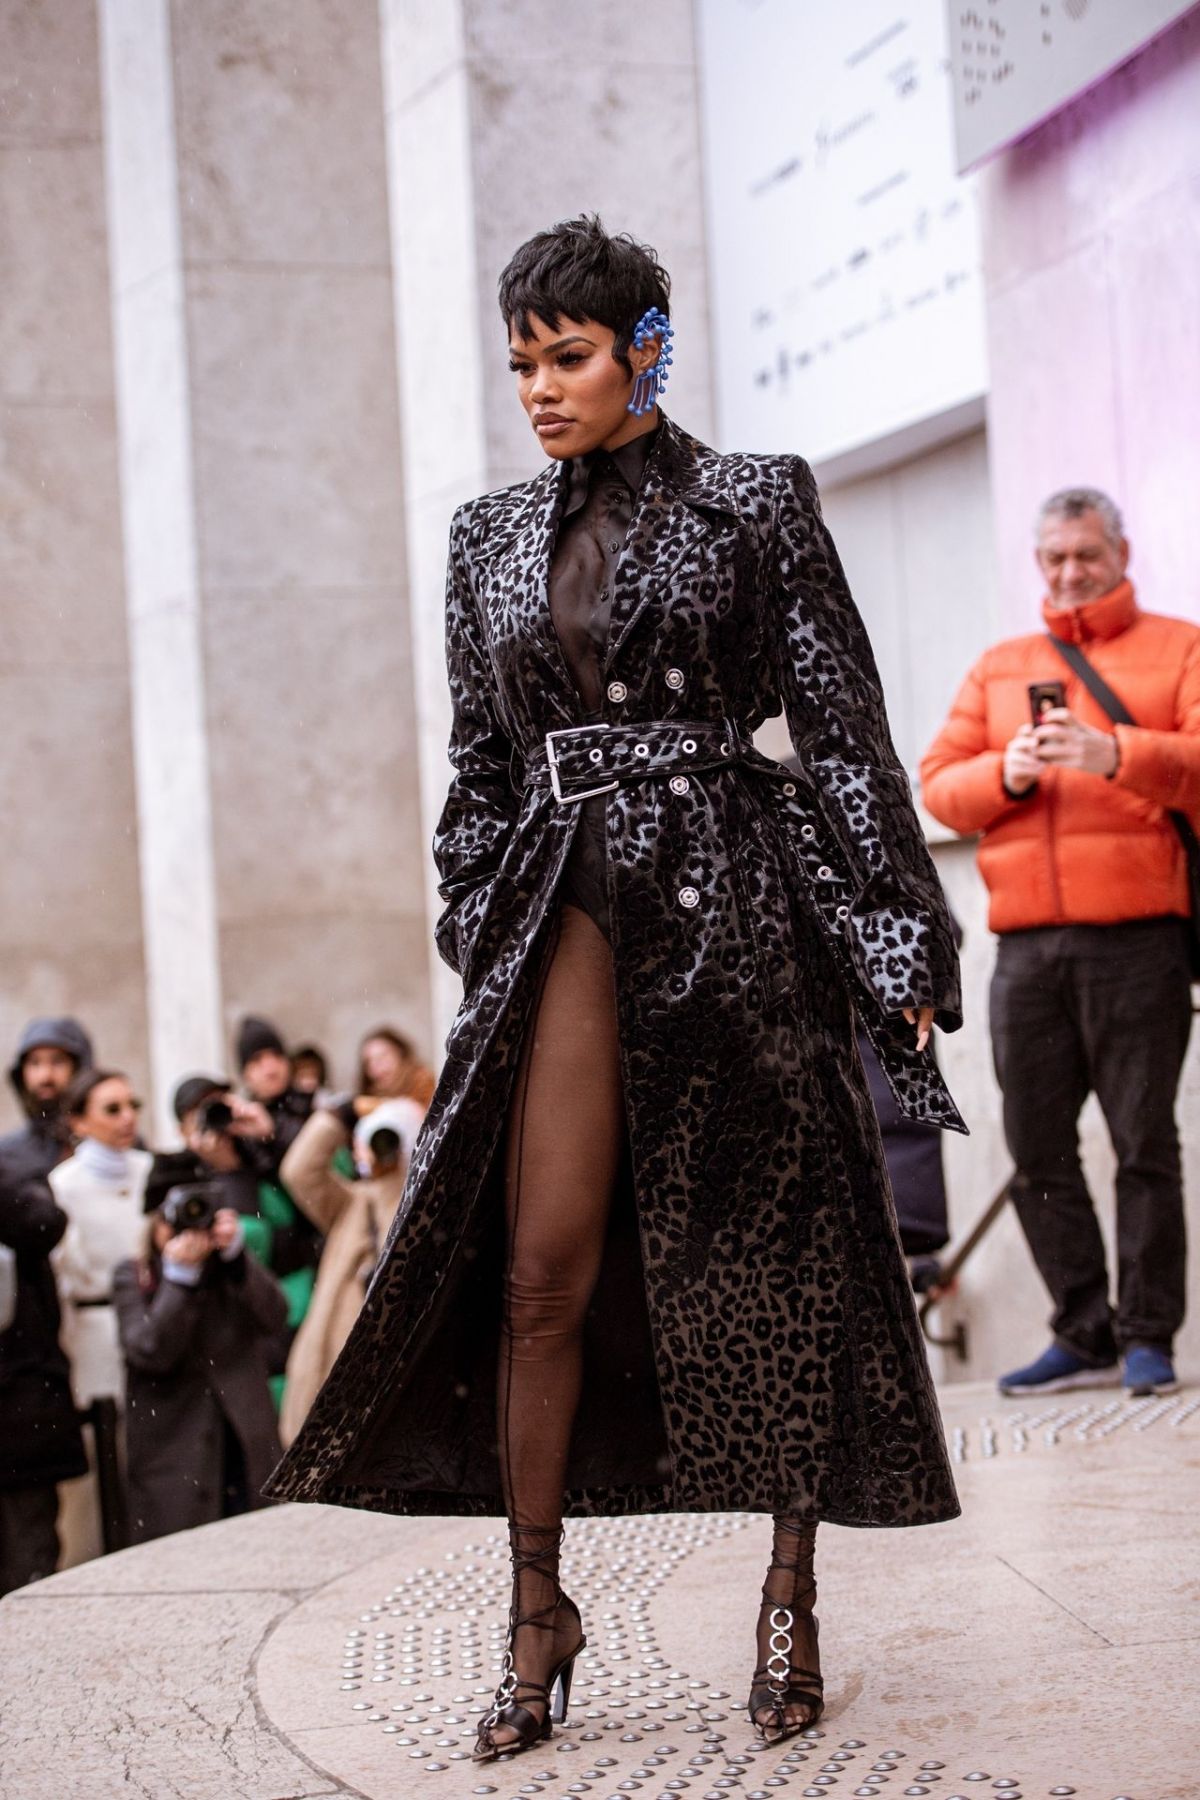 TEYANA TAYLOR Arrives at Thierry Mugler Show at Paris Fashion Week 02 ...